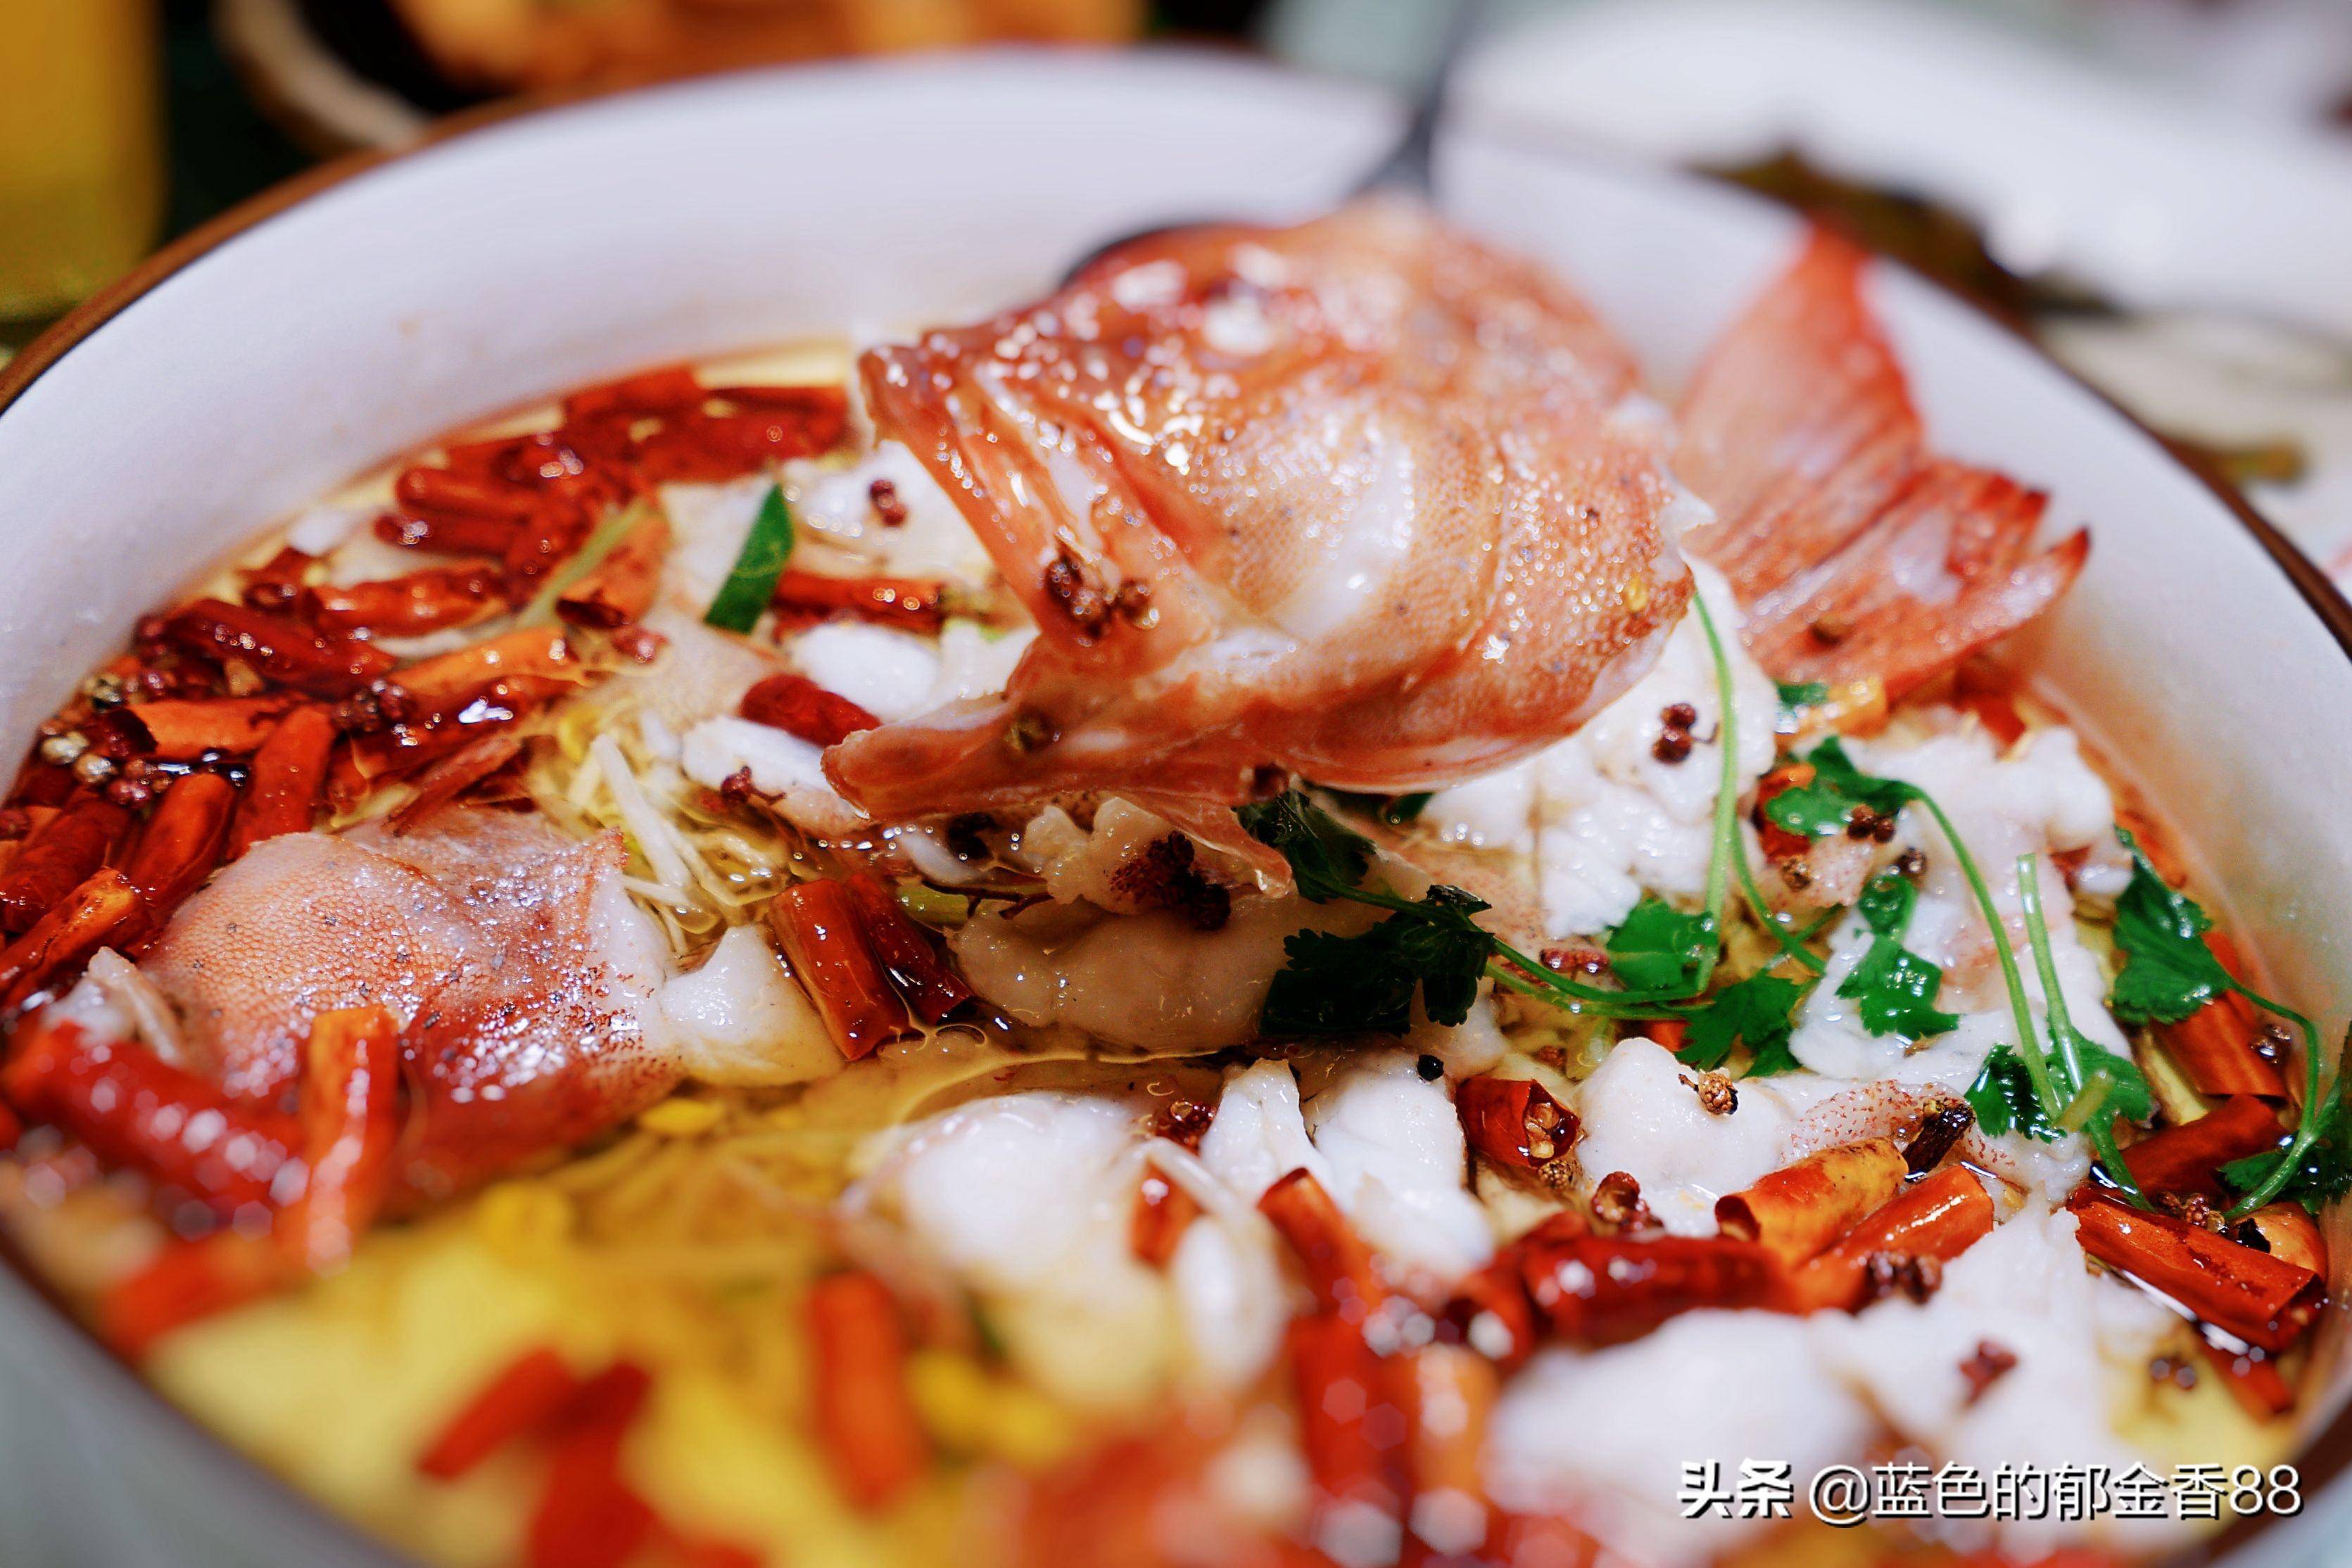 有一种海鲜,绽放在食物里,绚烂而极致,这就是宁海食府的海鲜